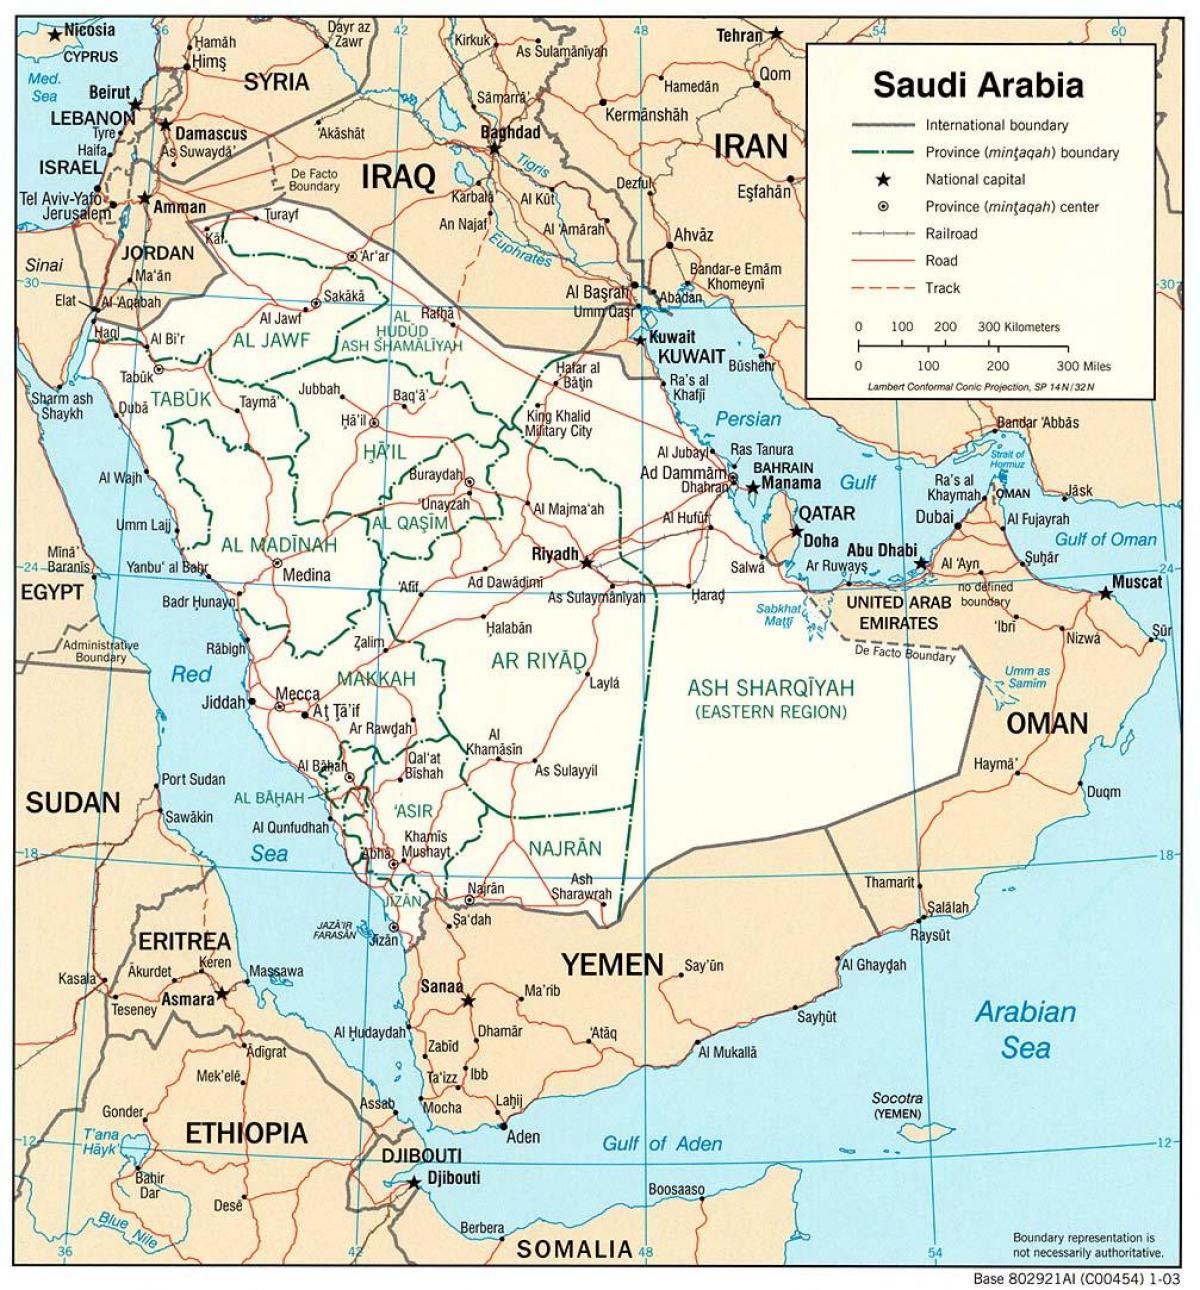 Saudi Arabia barabara ramani